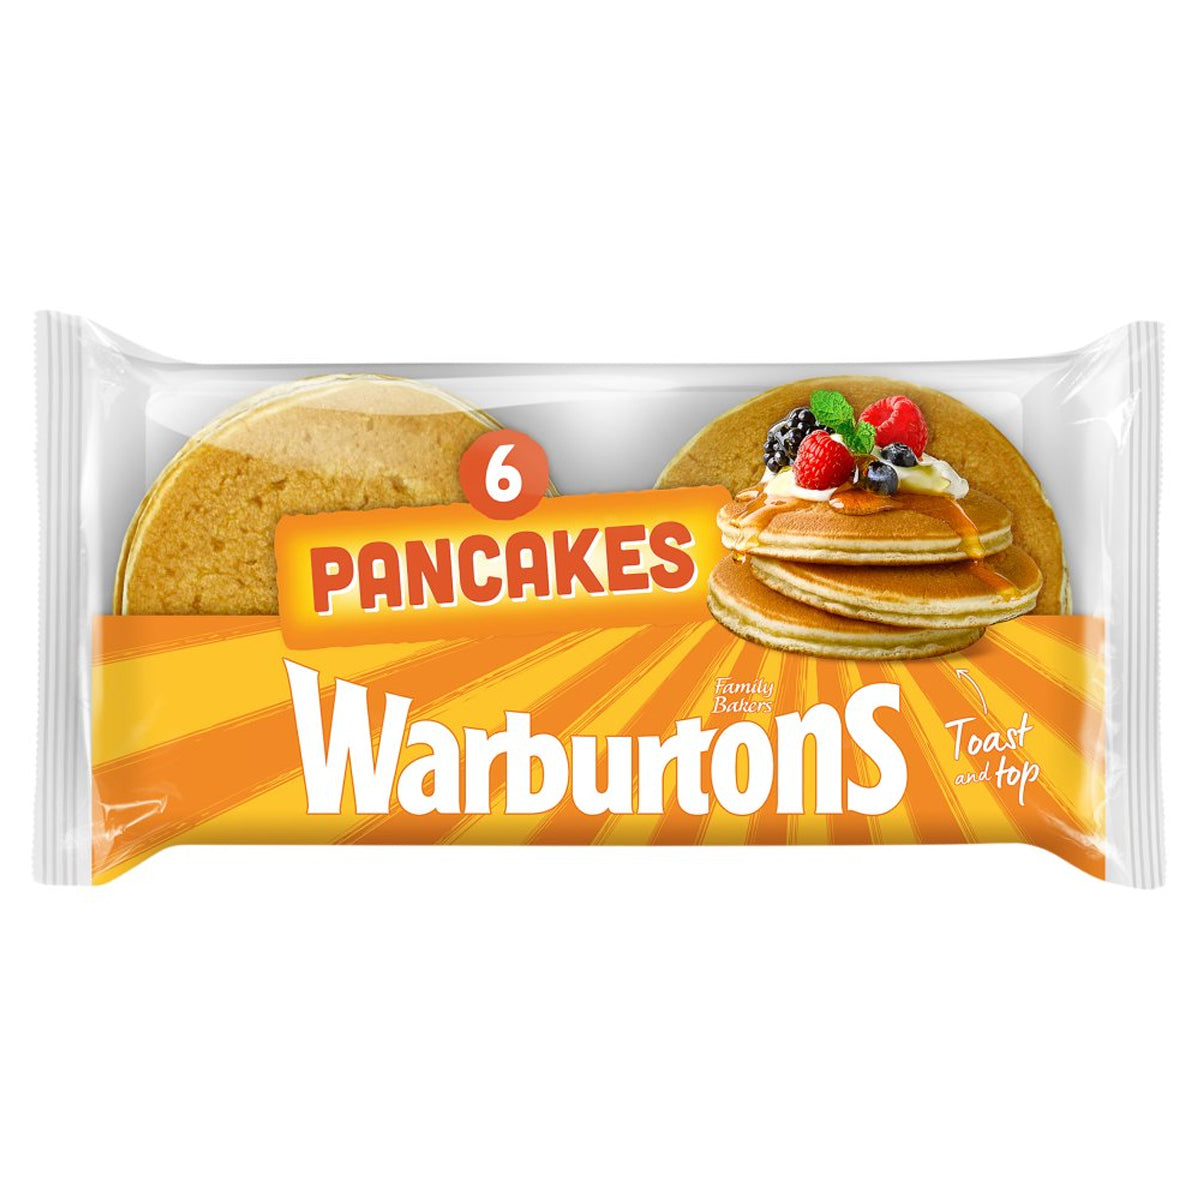 Warburtons - Pancakes - 6s.